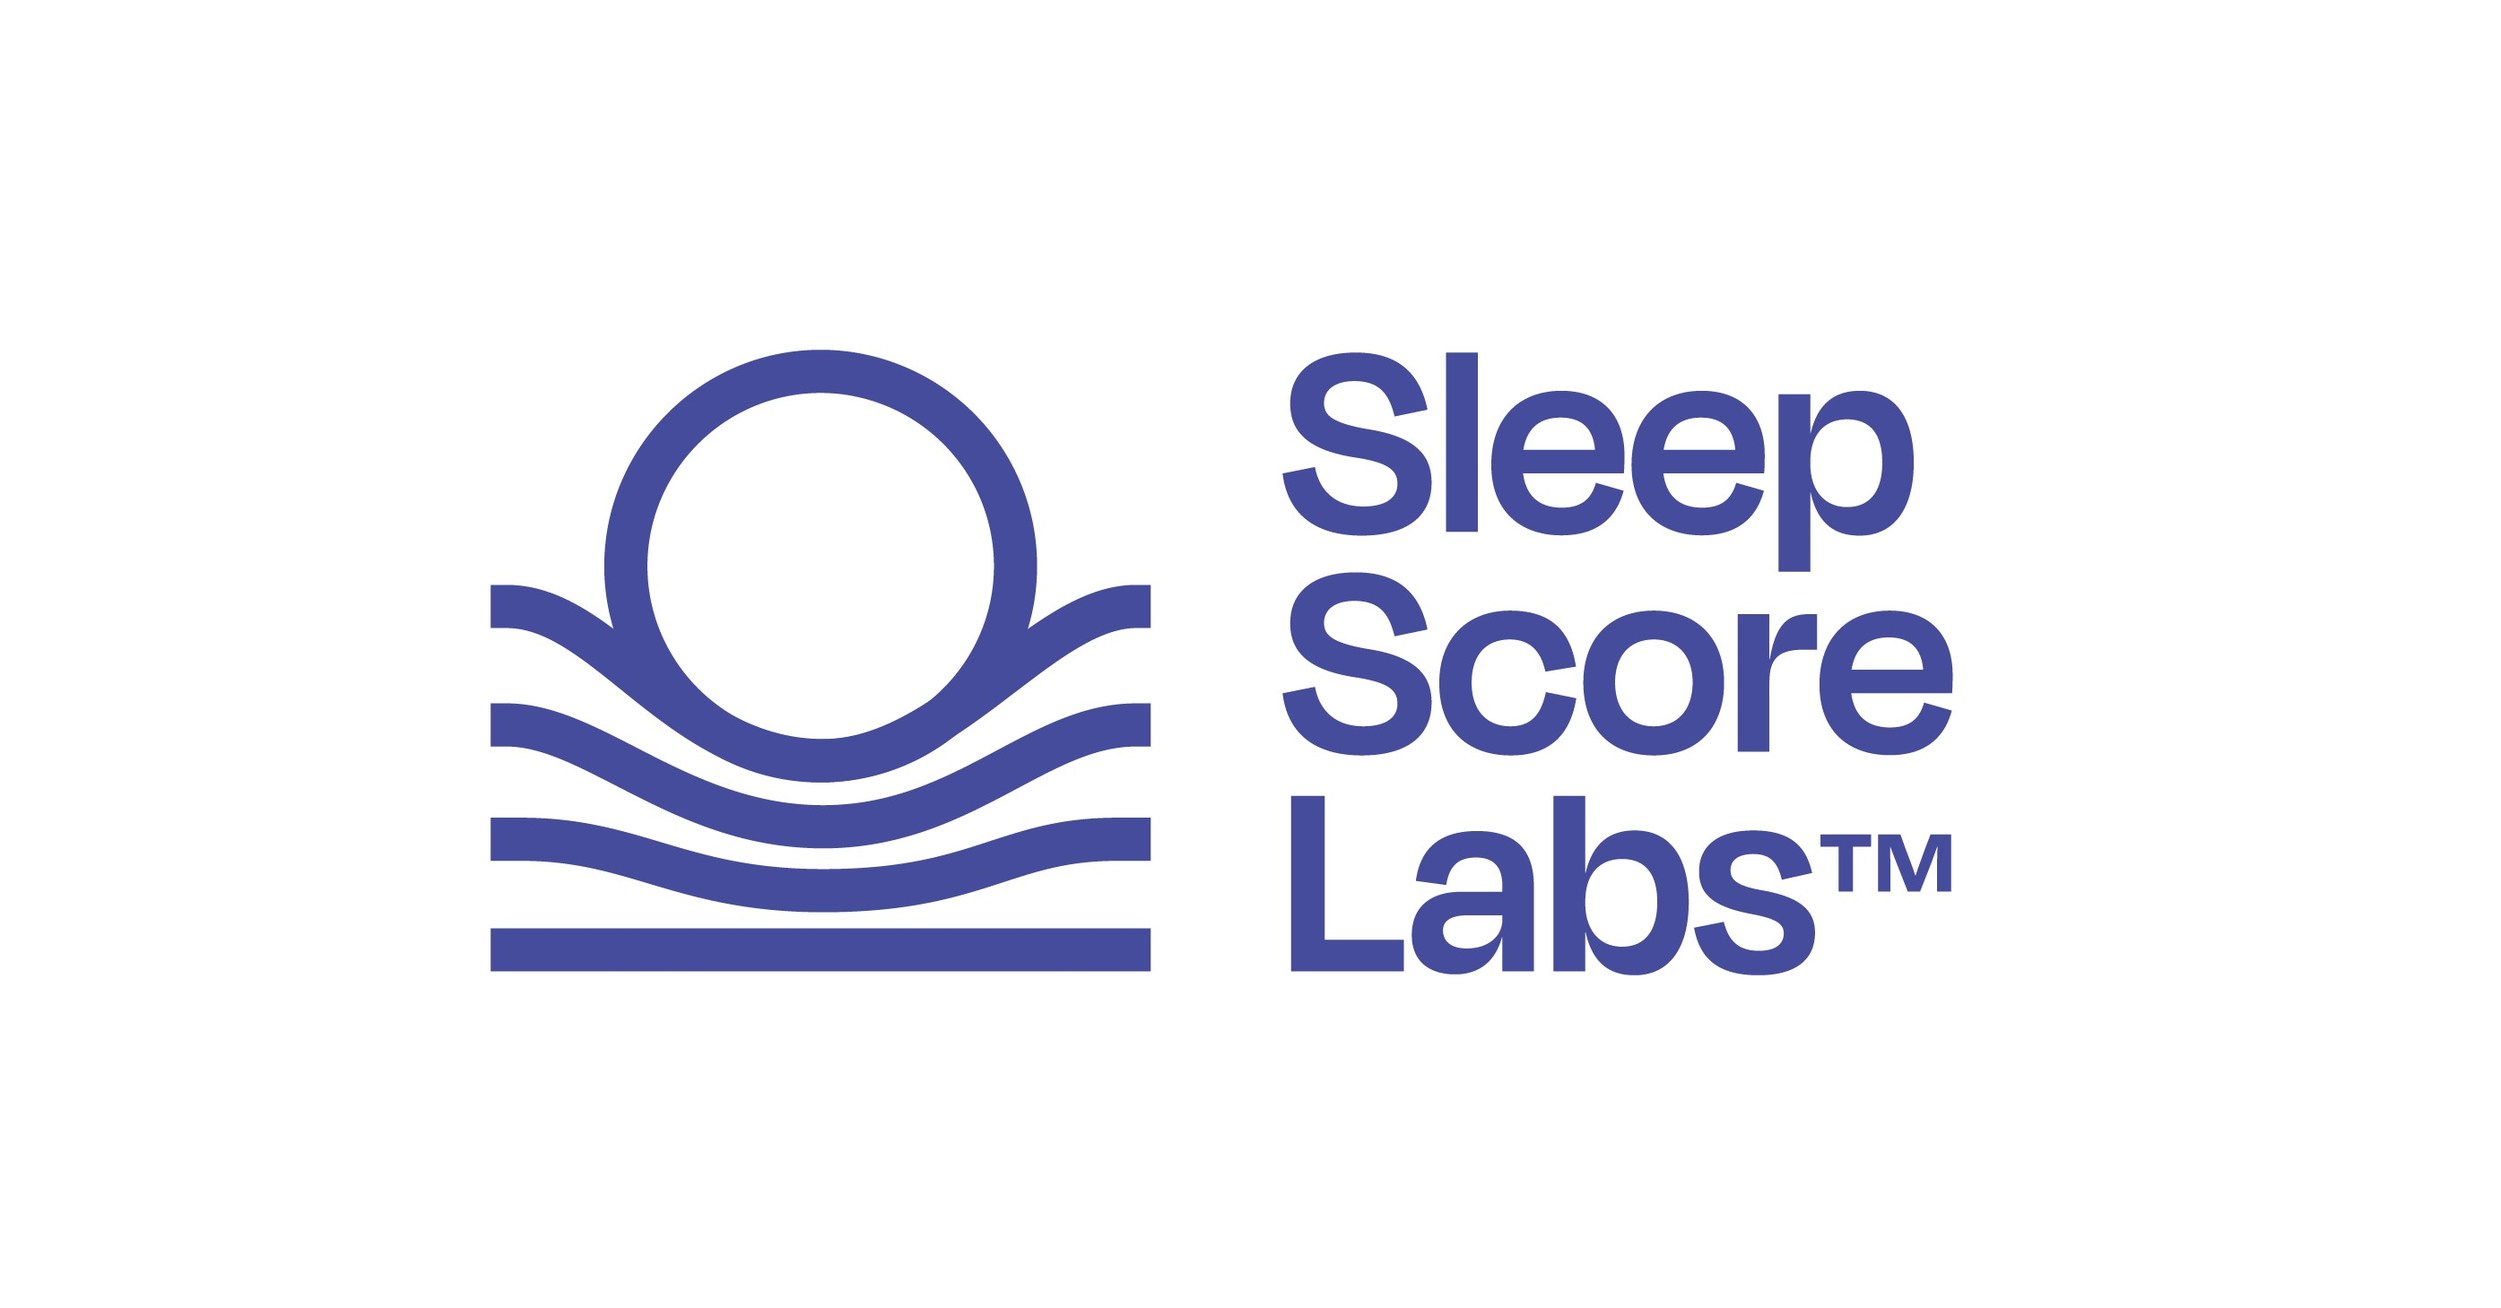 SleepScore Labs startet das weltweit erste erstattungsfähige digitale Schlafverbesserungsprogramm, ein wichtiger Schritt zur Förderung von Schlaf als Präventivmaßnahme